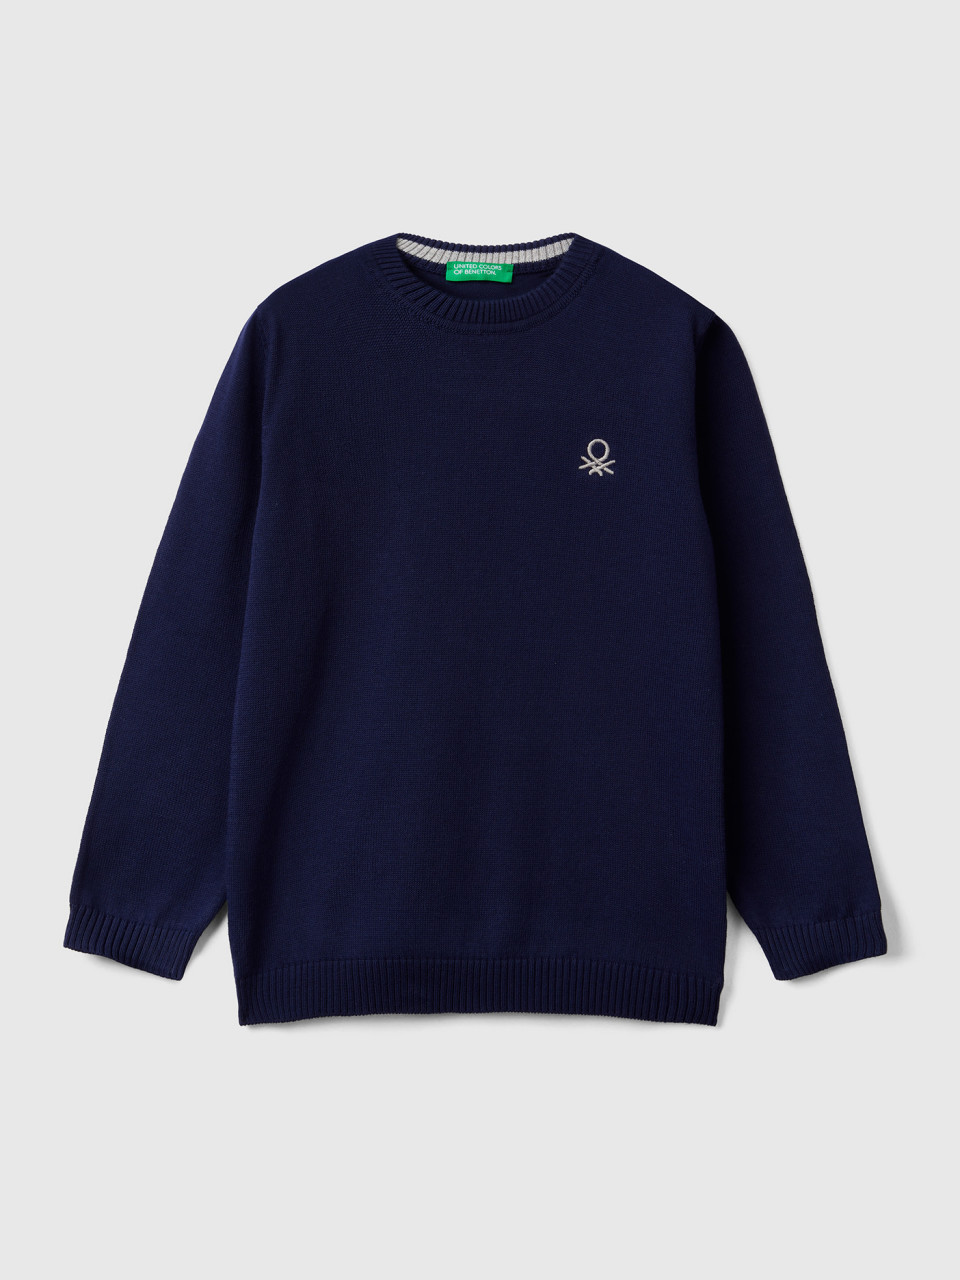 Benetton, Regular Fit Sweater In 100% Cotton, Dark Blue, Kids